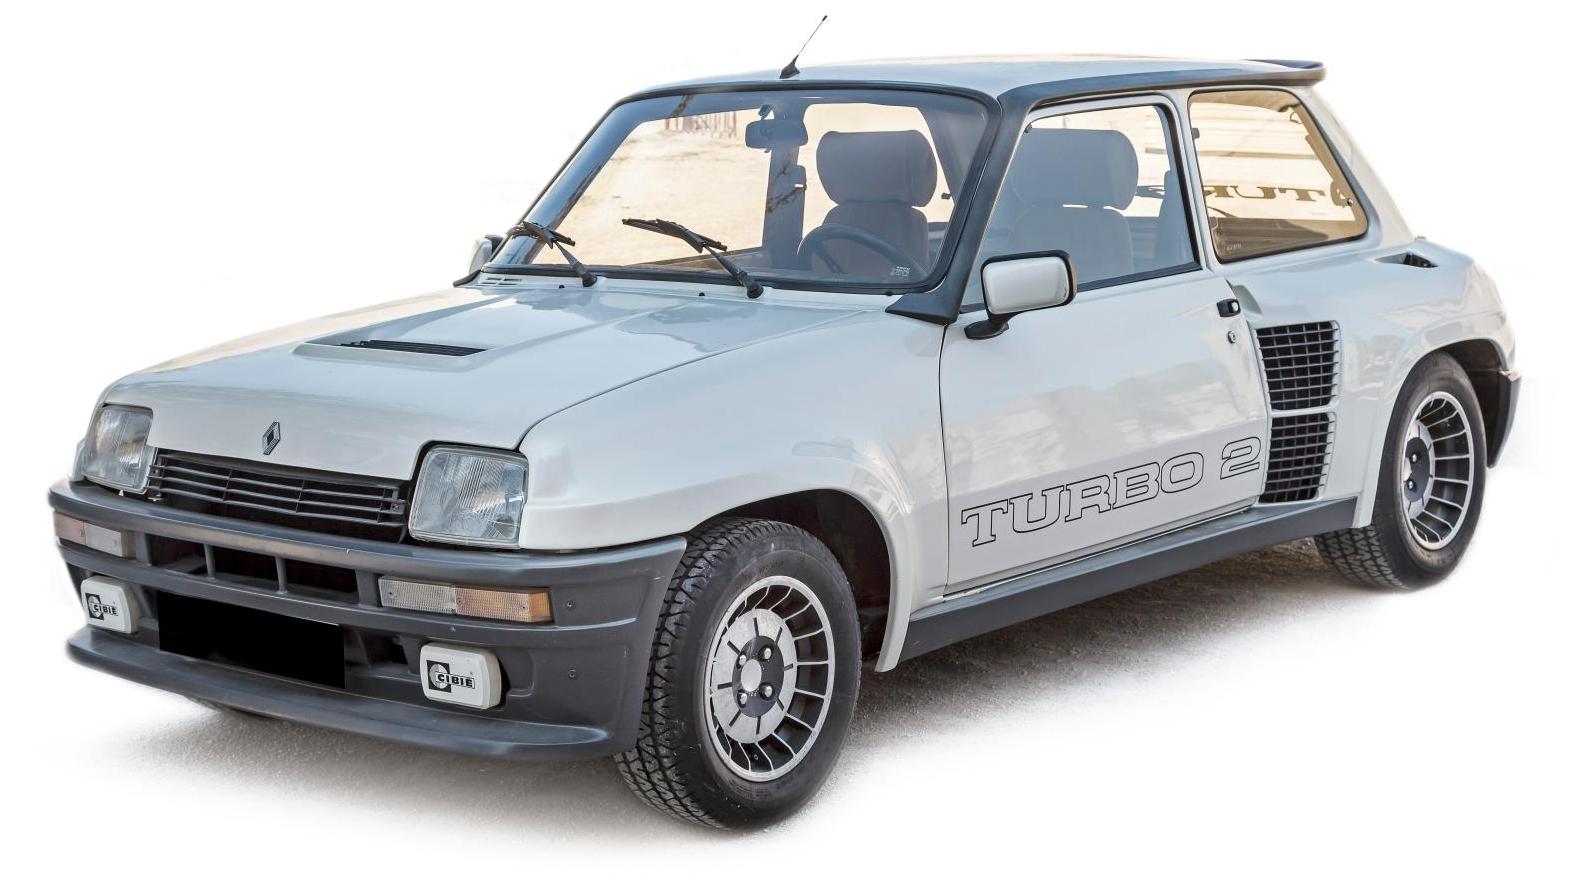 Renault R5 Turbo 2, 1982. Adjugé 67 260 € Des voitures d’hier et avant-hier à Avignon